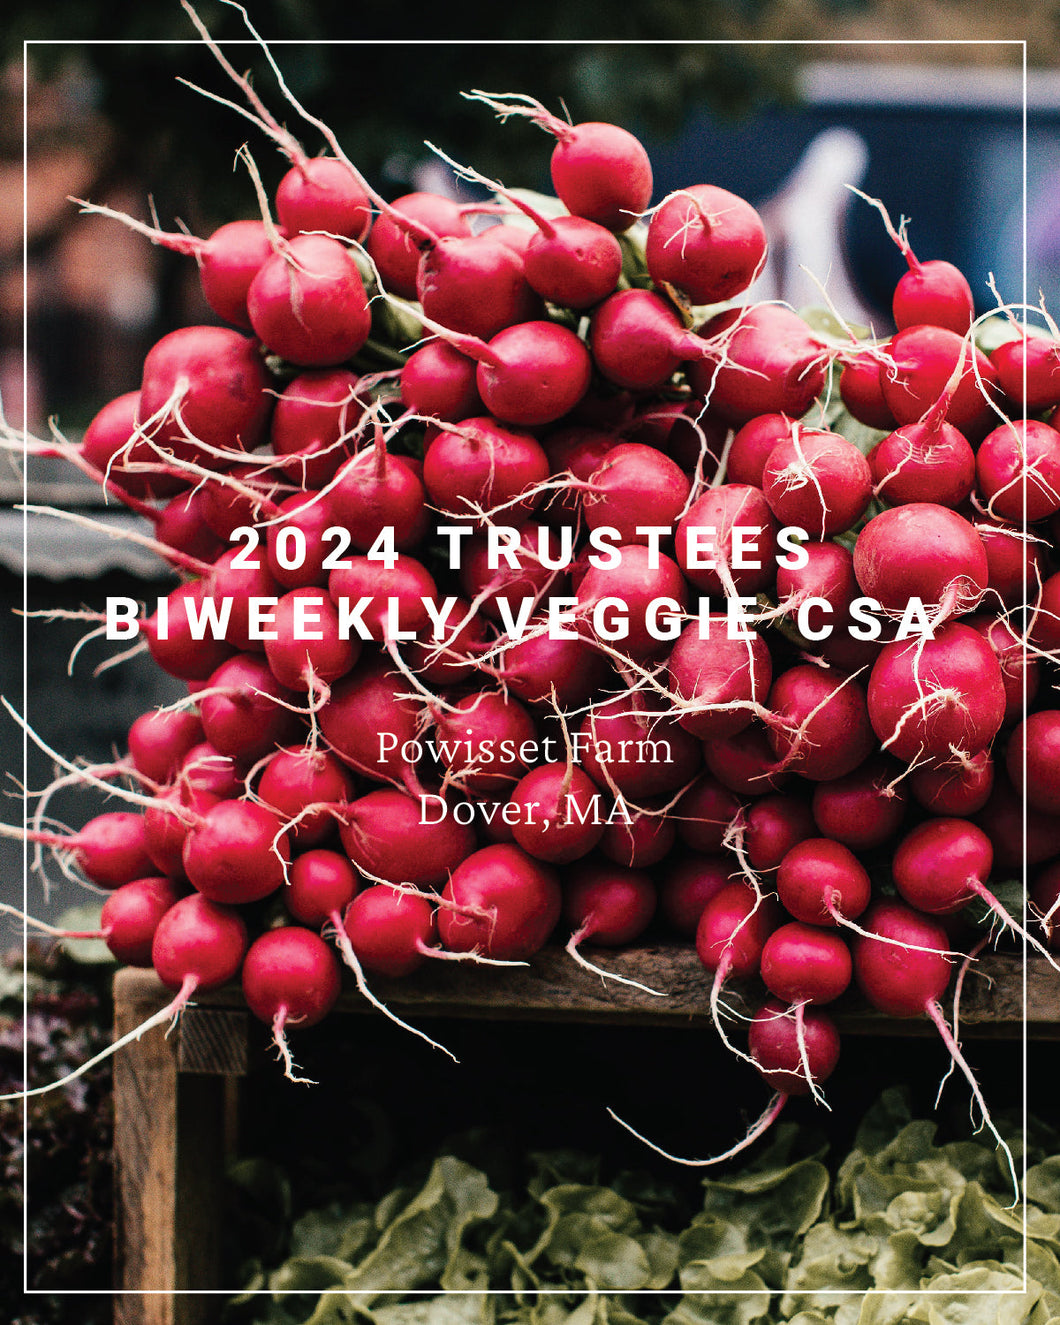 2024 Trustees Veggie CSA Split Payments, Bi-Weekly CSA - Powisset Farm